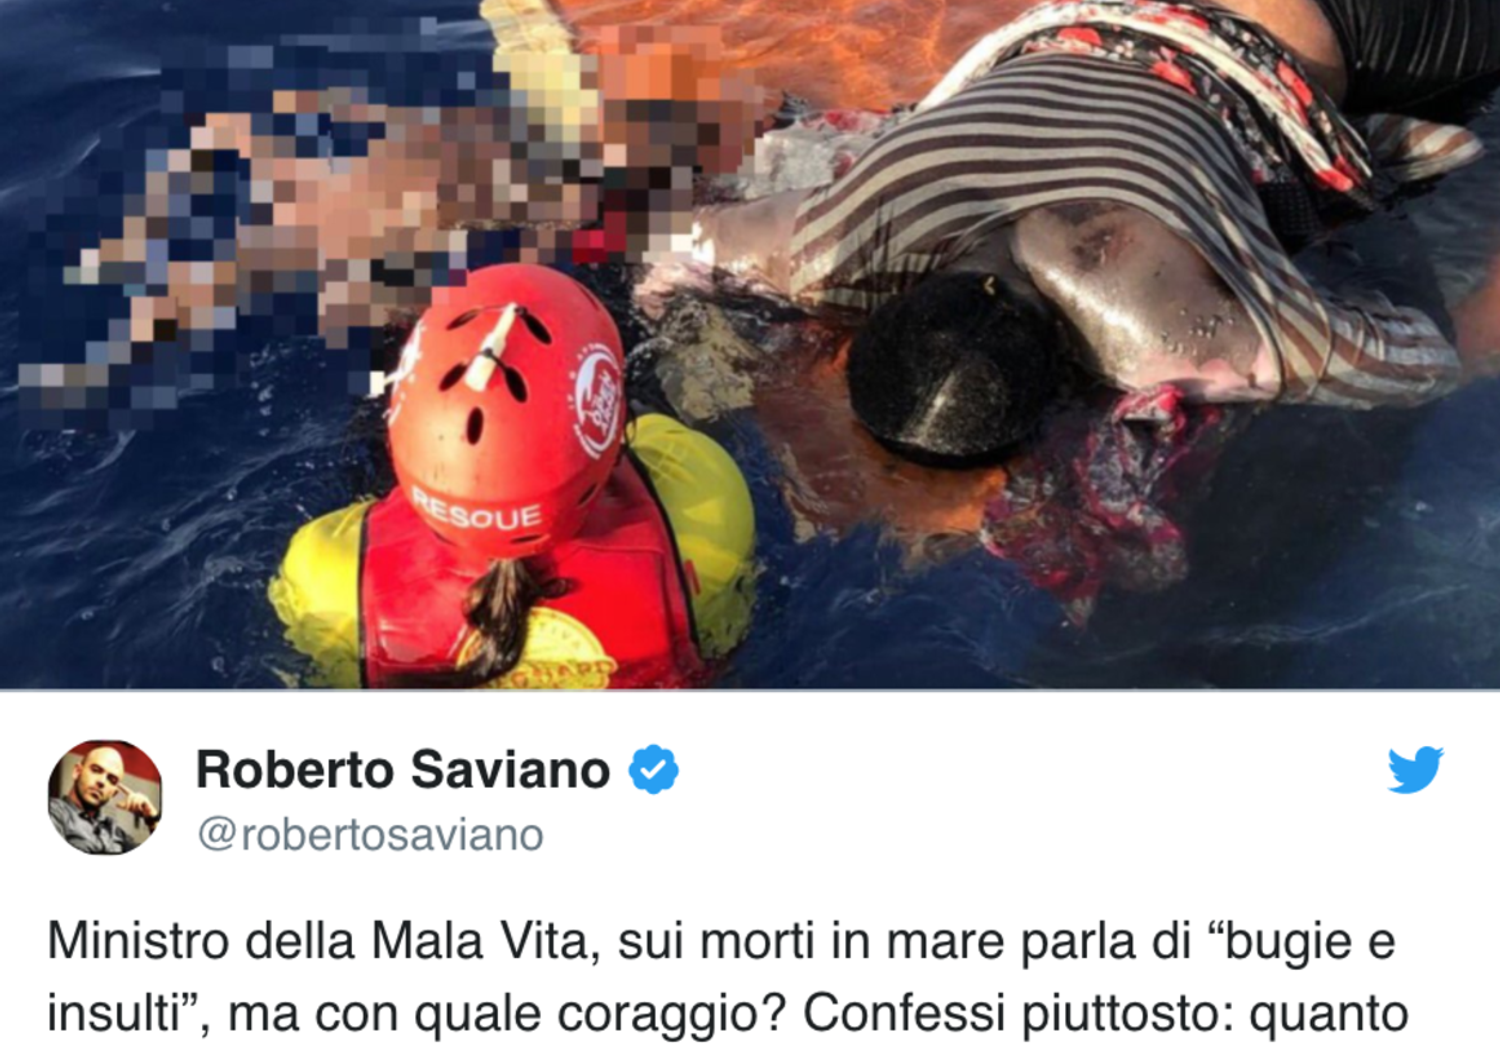 Il nuovo duro attacco di&nbsp;Saviano&nbsp;a Salvini e&nbsp;Toninelli&nbsp;dopo i morti in mare di questa notte